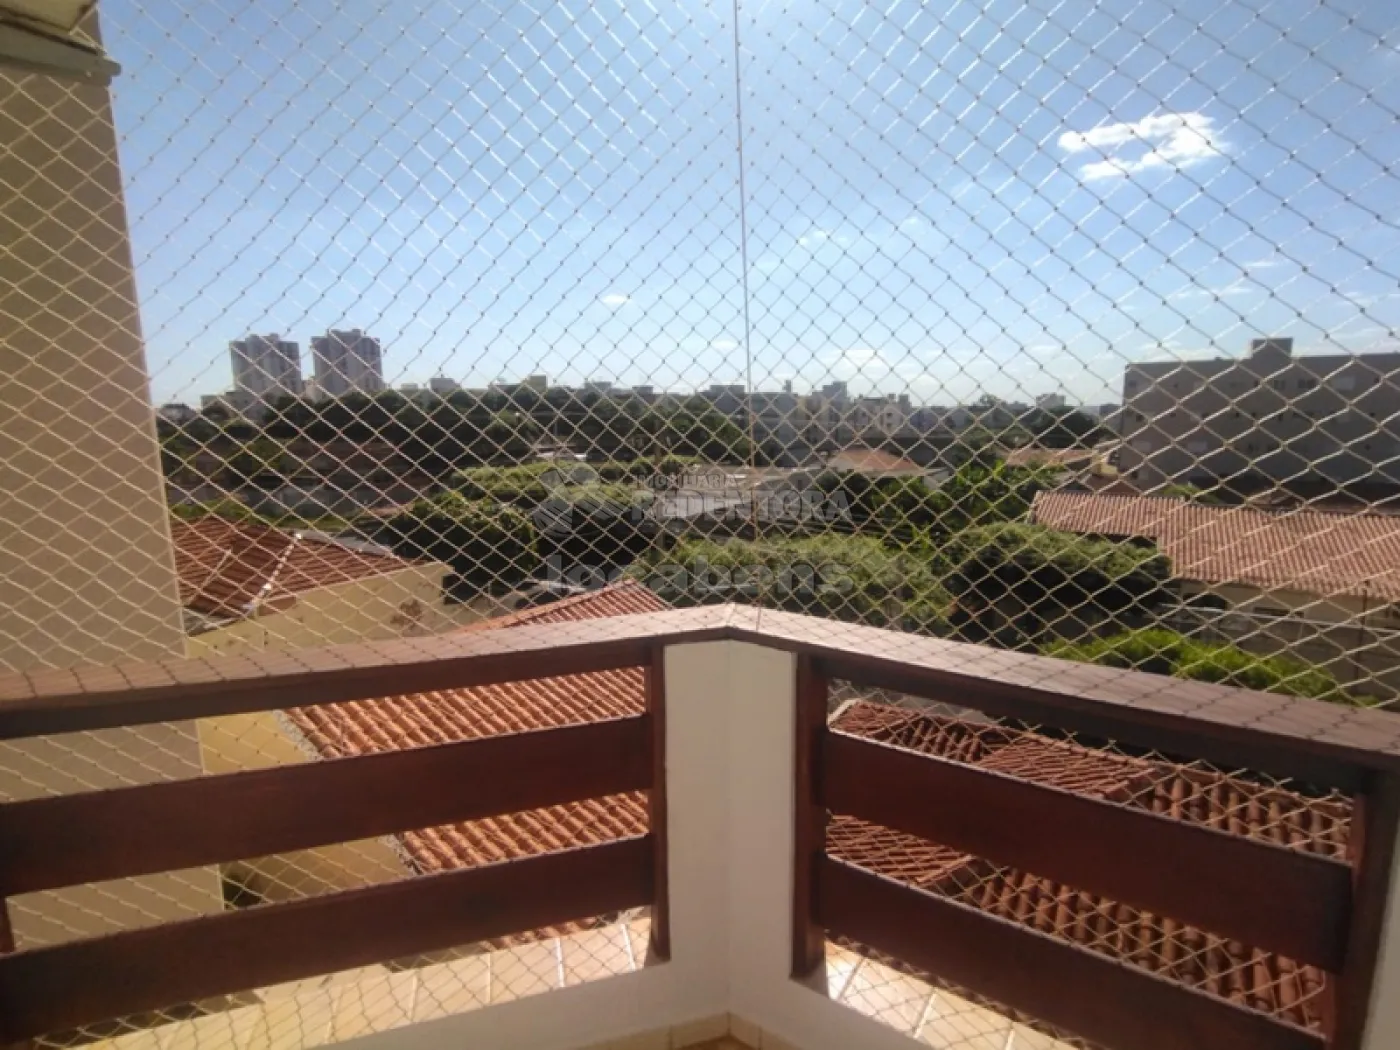 Comprar Apartamento / Padrão em São José do Rio Preto R$ 480.000,00 - Foto 15